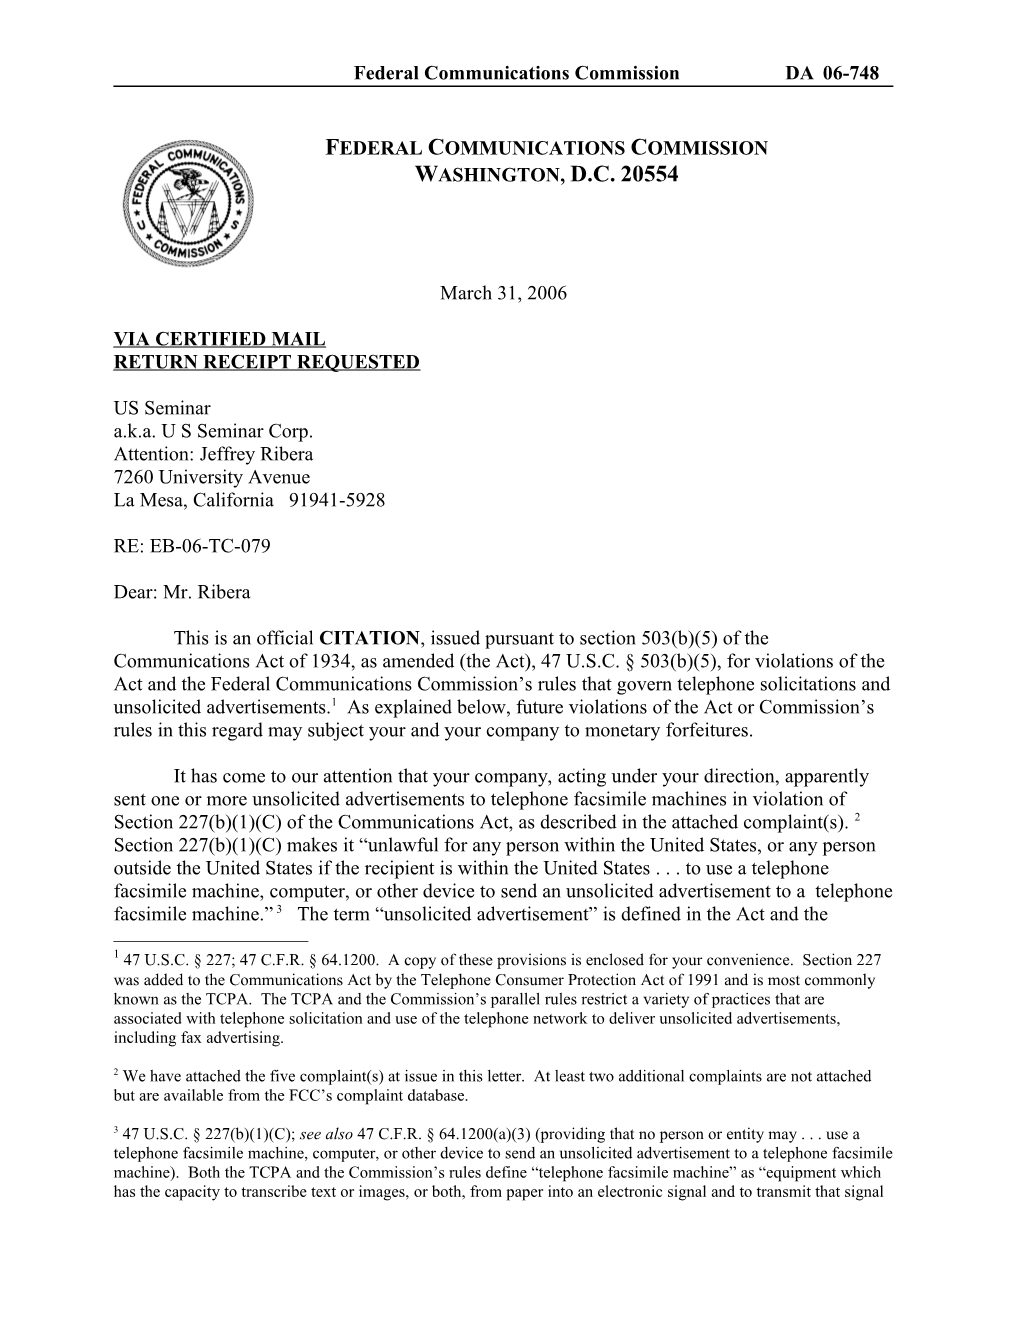 Federal Communications Commission DA 06-748